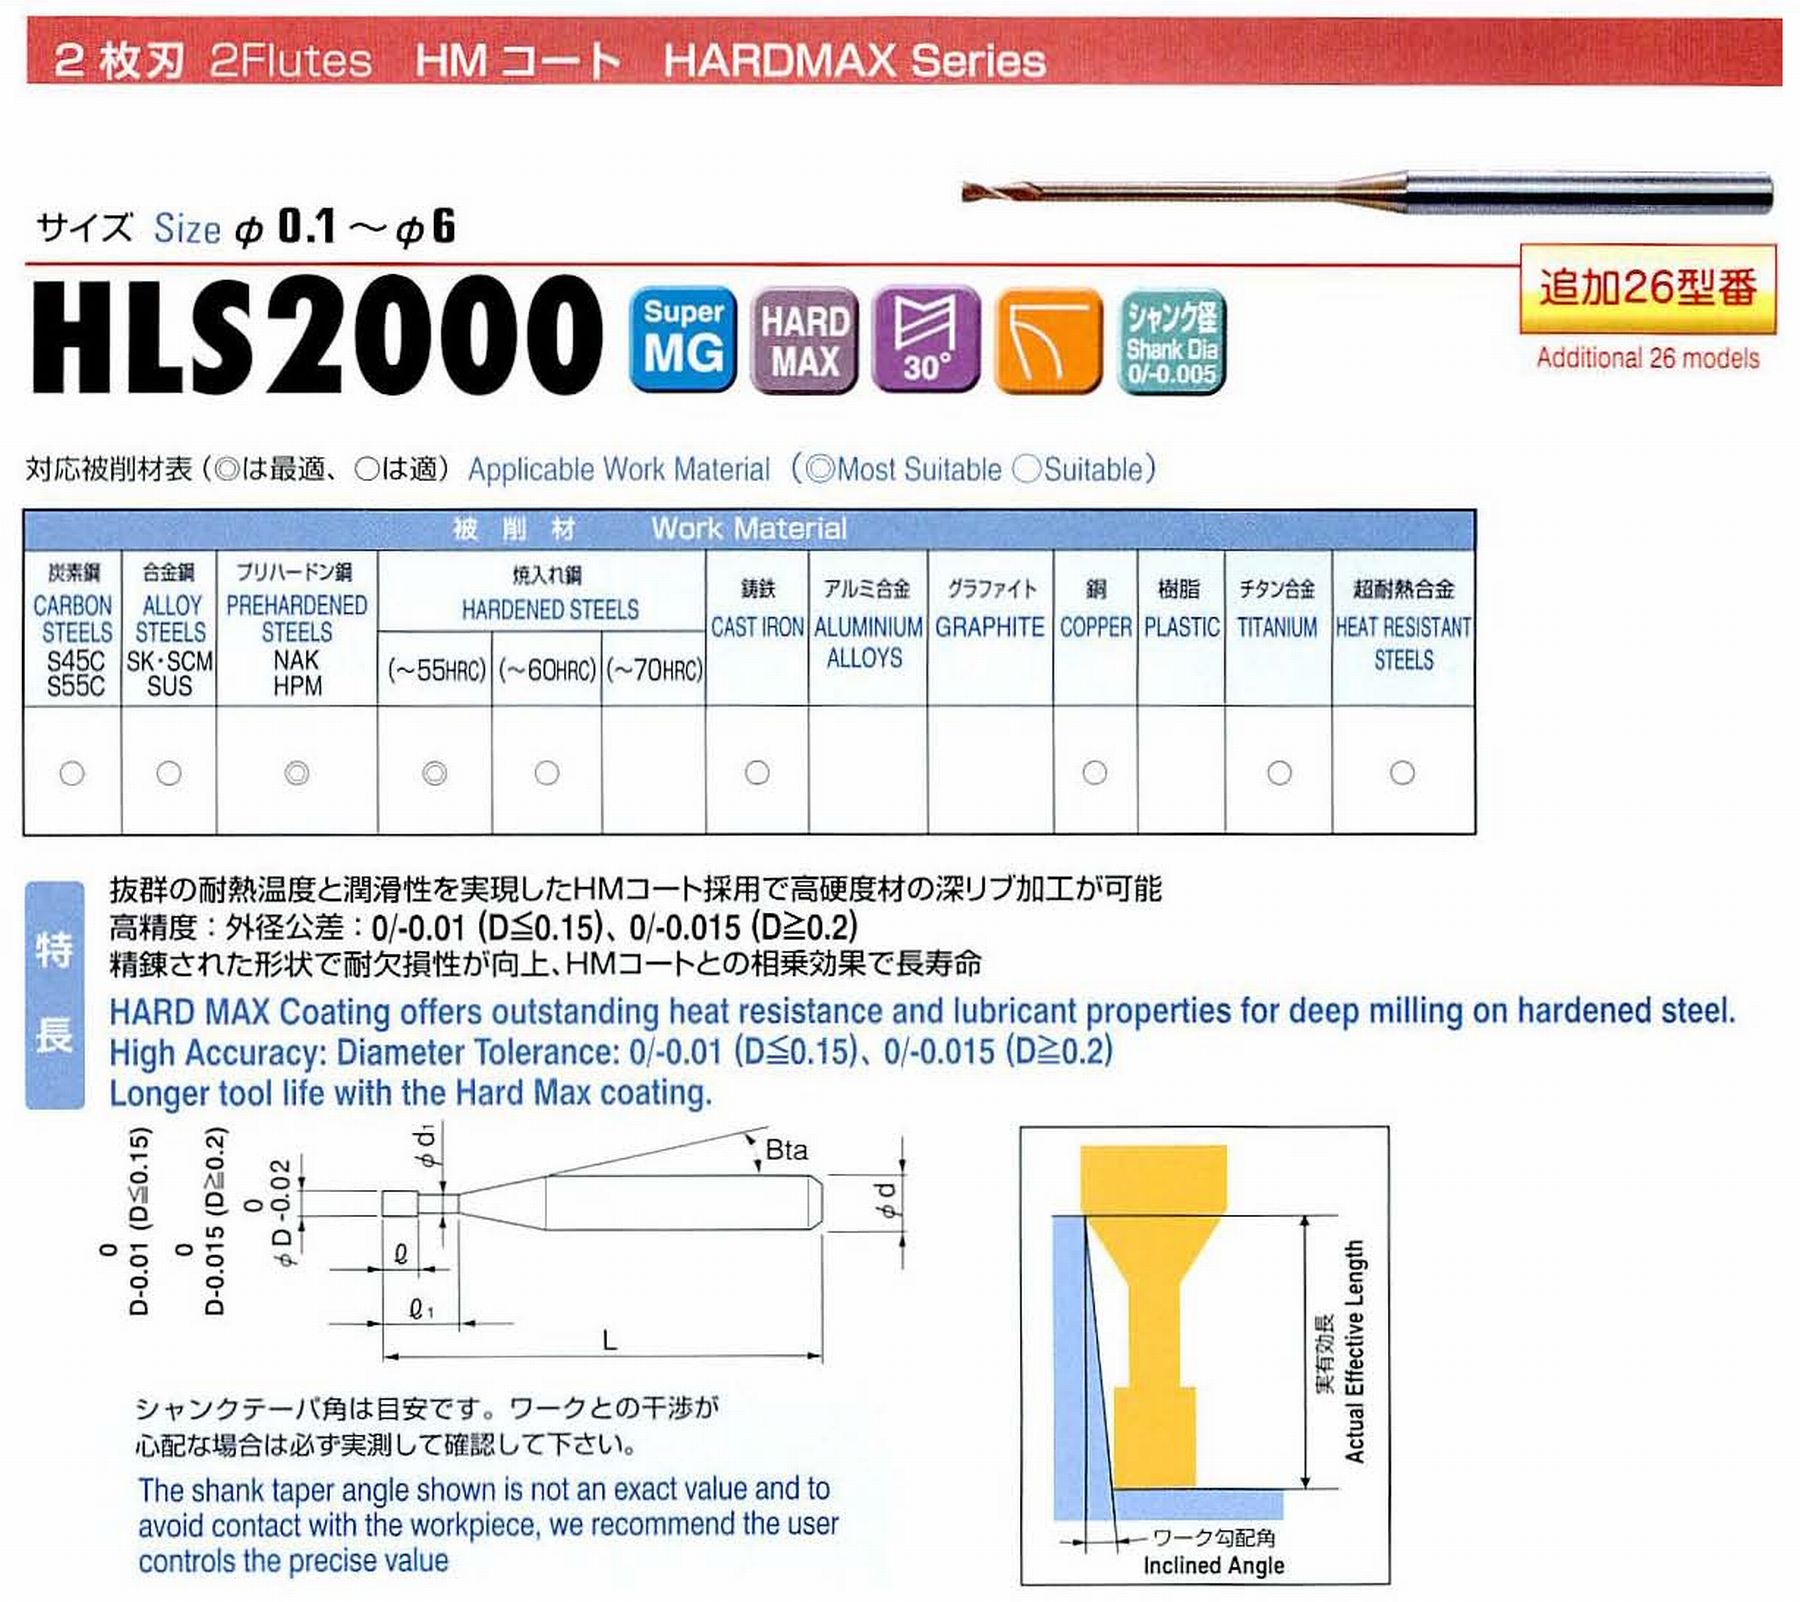 ユニオンツール 2枚刃 HLS2006-080 外径0.6 有効長8 刃長0.9 首径0.58 シャンクテーパ角16° 全長45 シャンク径4